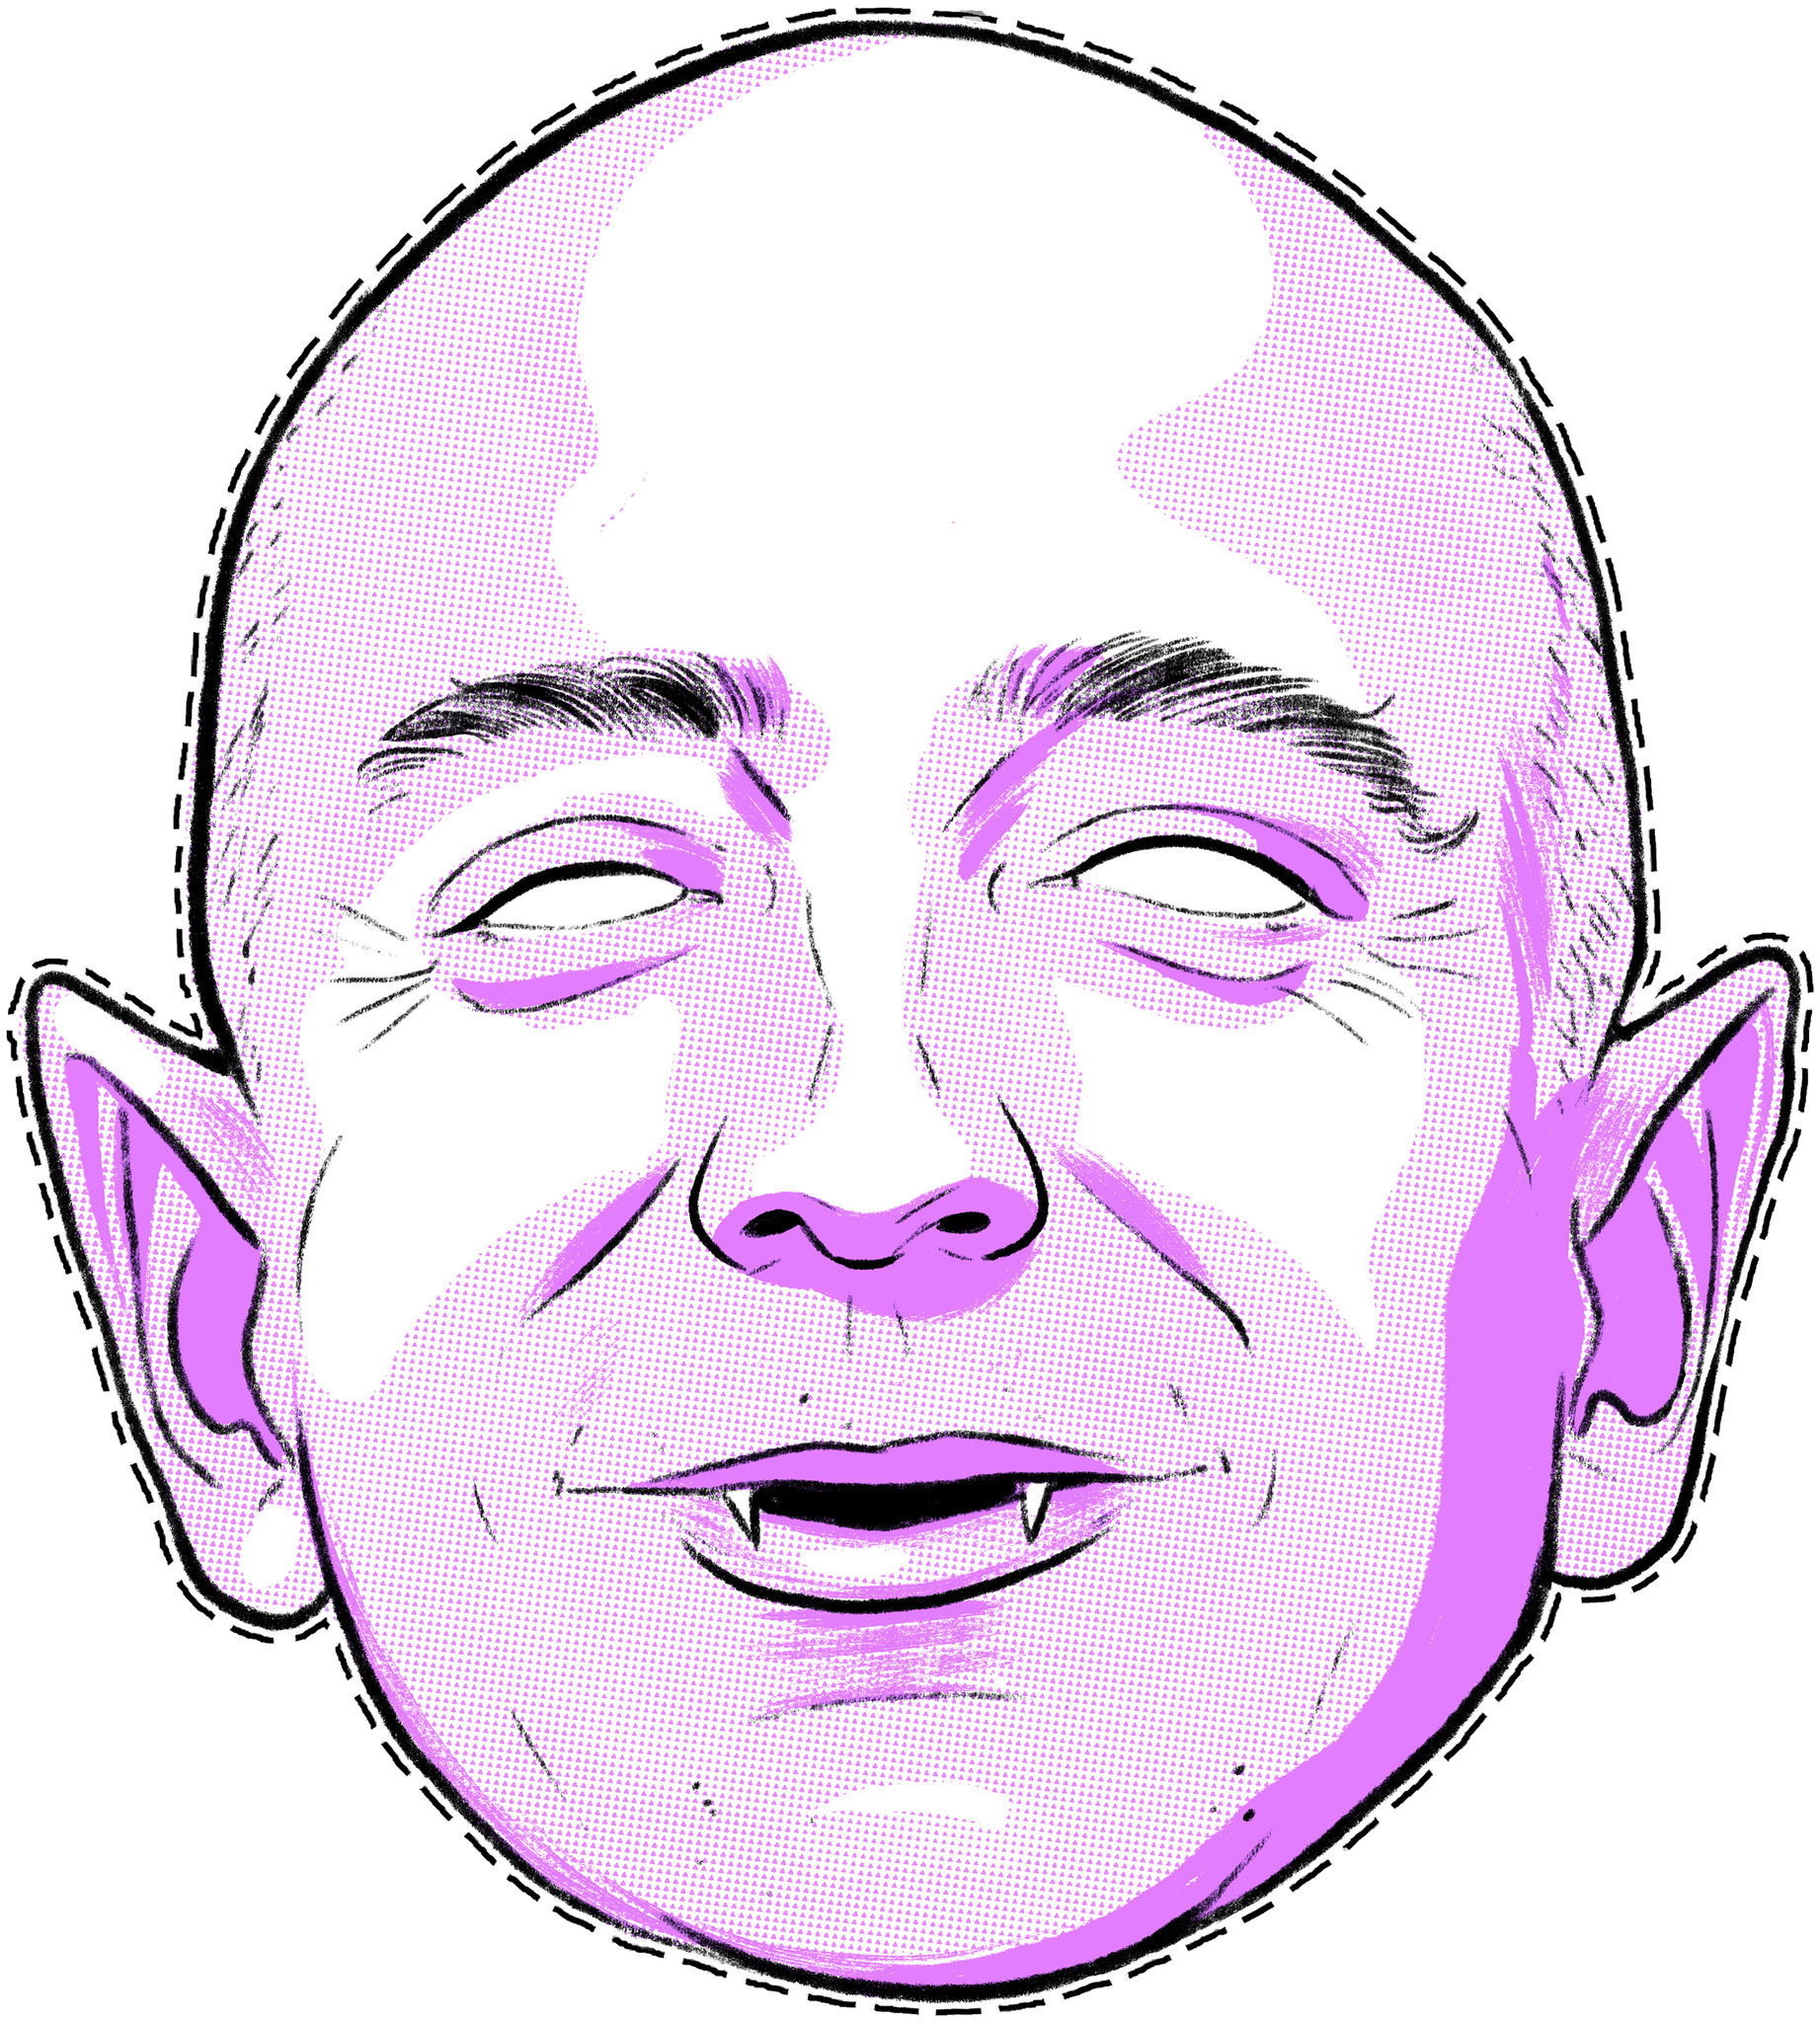 Vampire Jeff Bezos